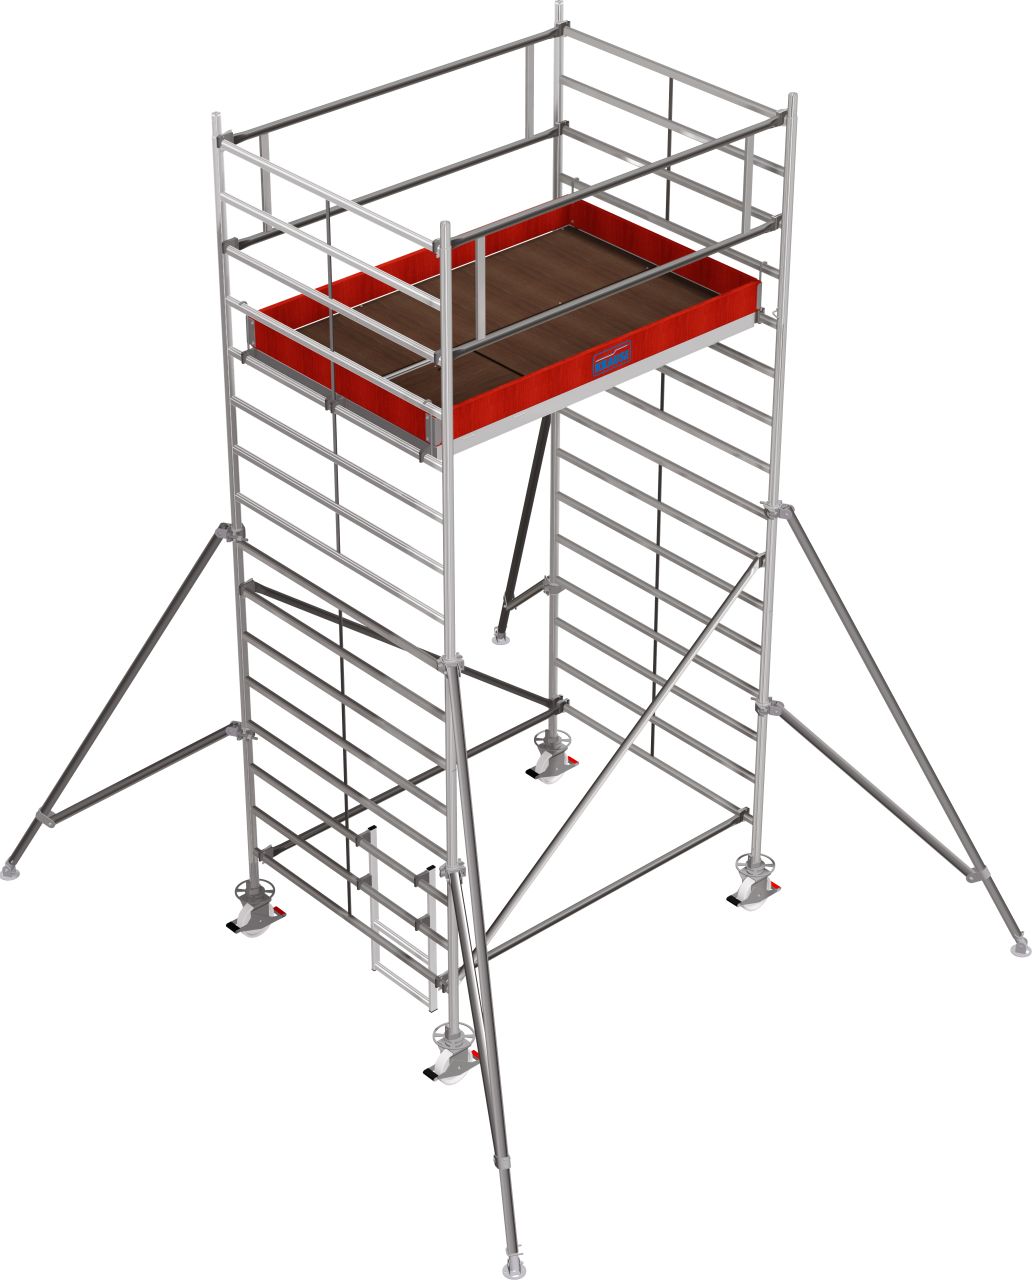 Дополнительное изображение Stabilo 5000 рабочая высота 5,2 м, размер площадки (2x1.5 м)